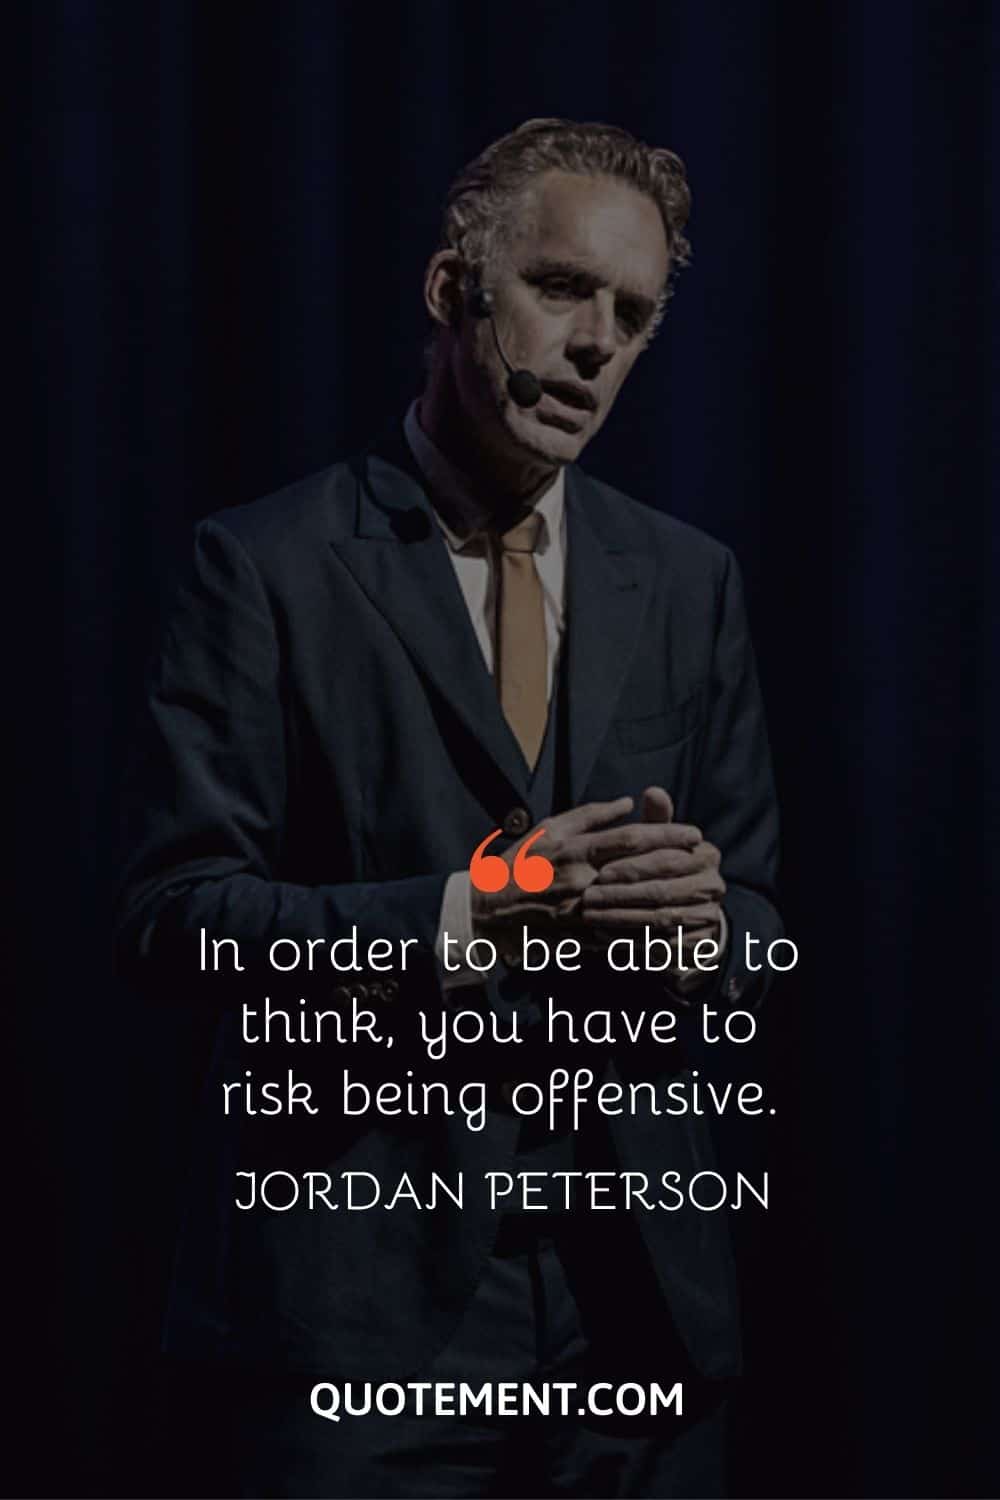 image of jordan peterson giving speech representing jordan peterson quote